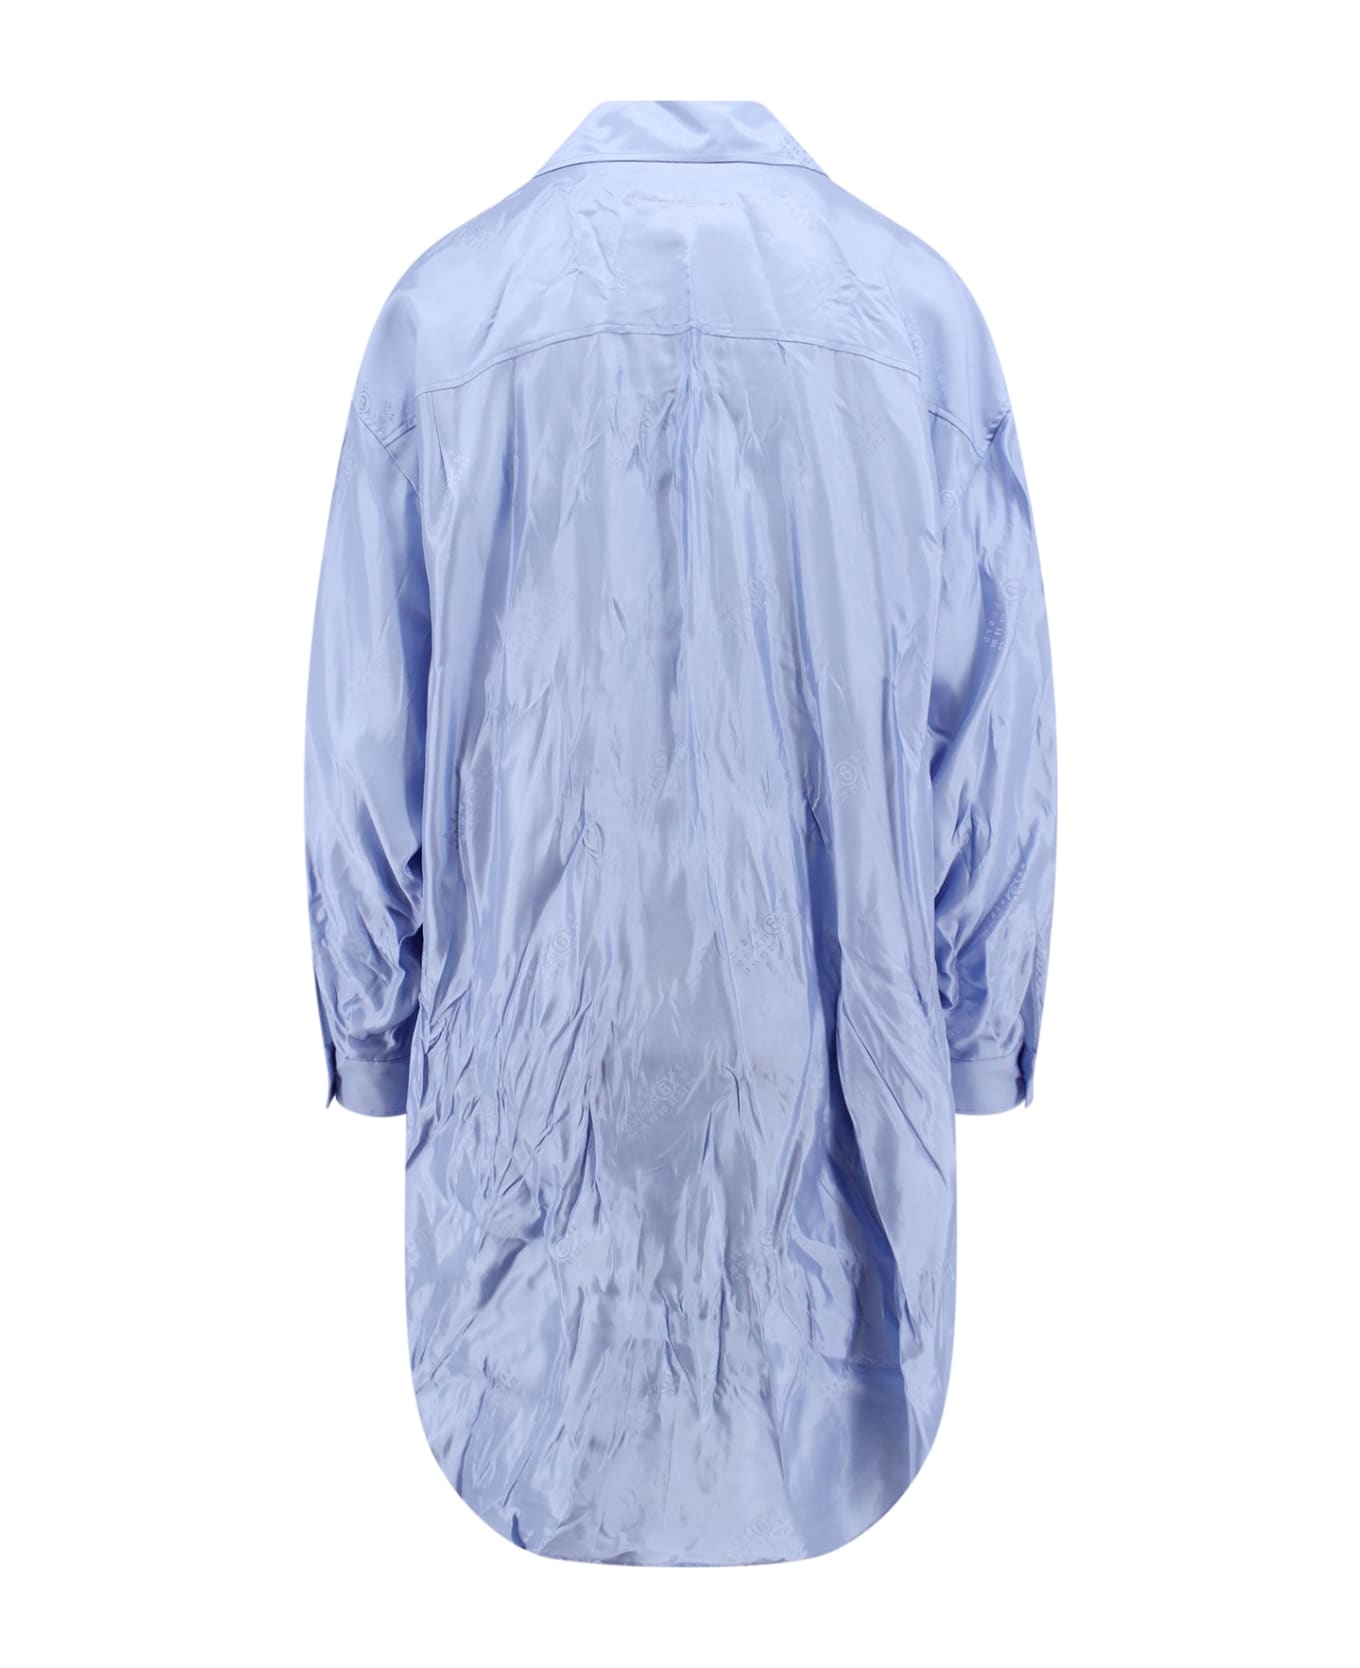 MM6 Maison Margiela Wrinkled-effect Dress - Blue シャツ